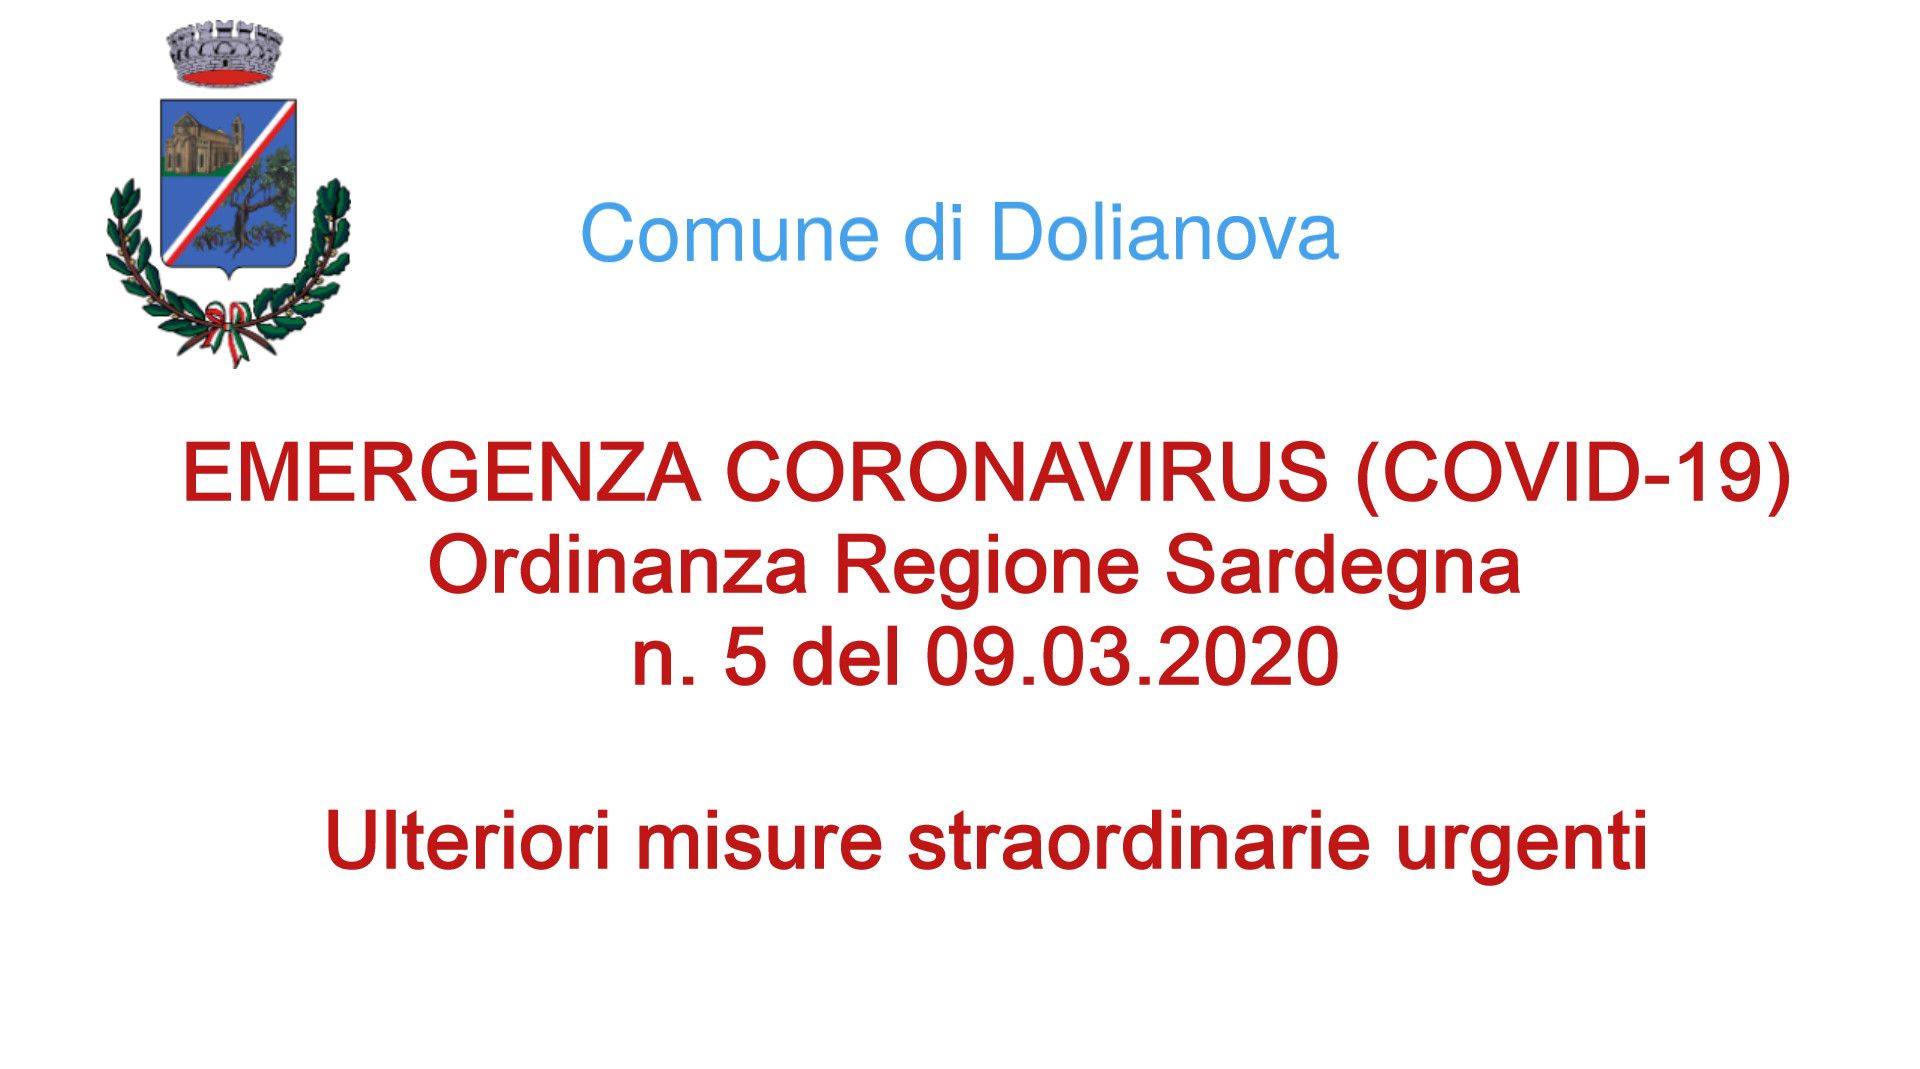 CORONAVIRUS (COVID-19): ORDINANZA REGIONE SARDEGNA N. 5 DEL 09.03.2020